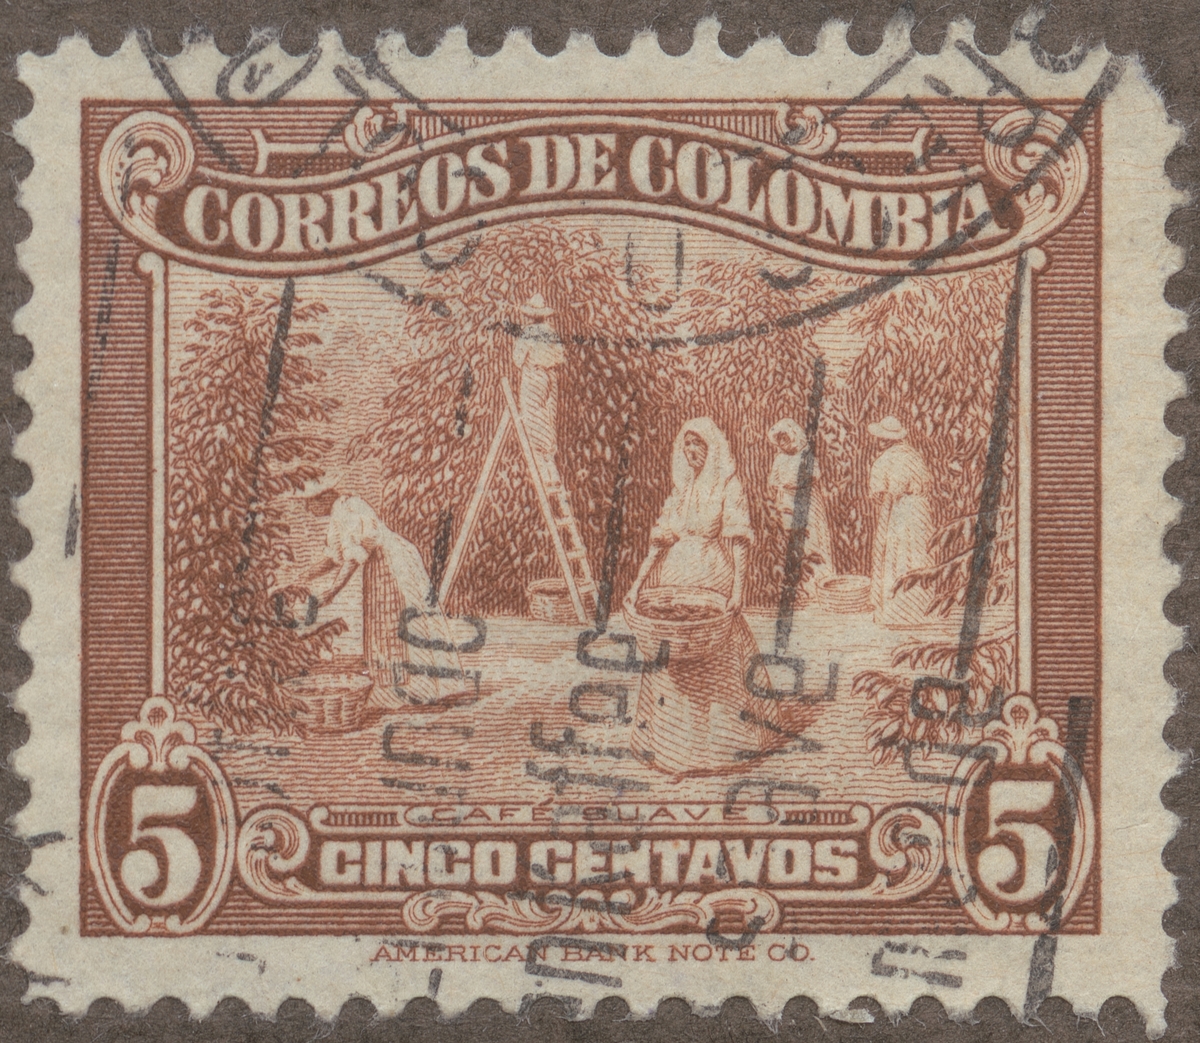 Frimärke ur Gösta Bodmans filatelistiska motivsamling, påbörjad 1950.
Frimärke från Colombia, 1934. Motiv av kaffeskördande.